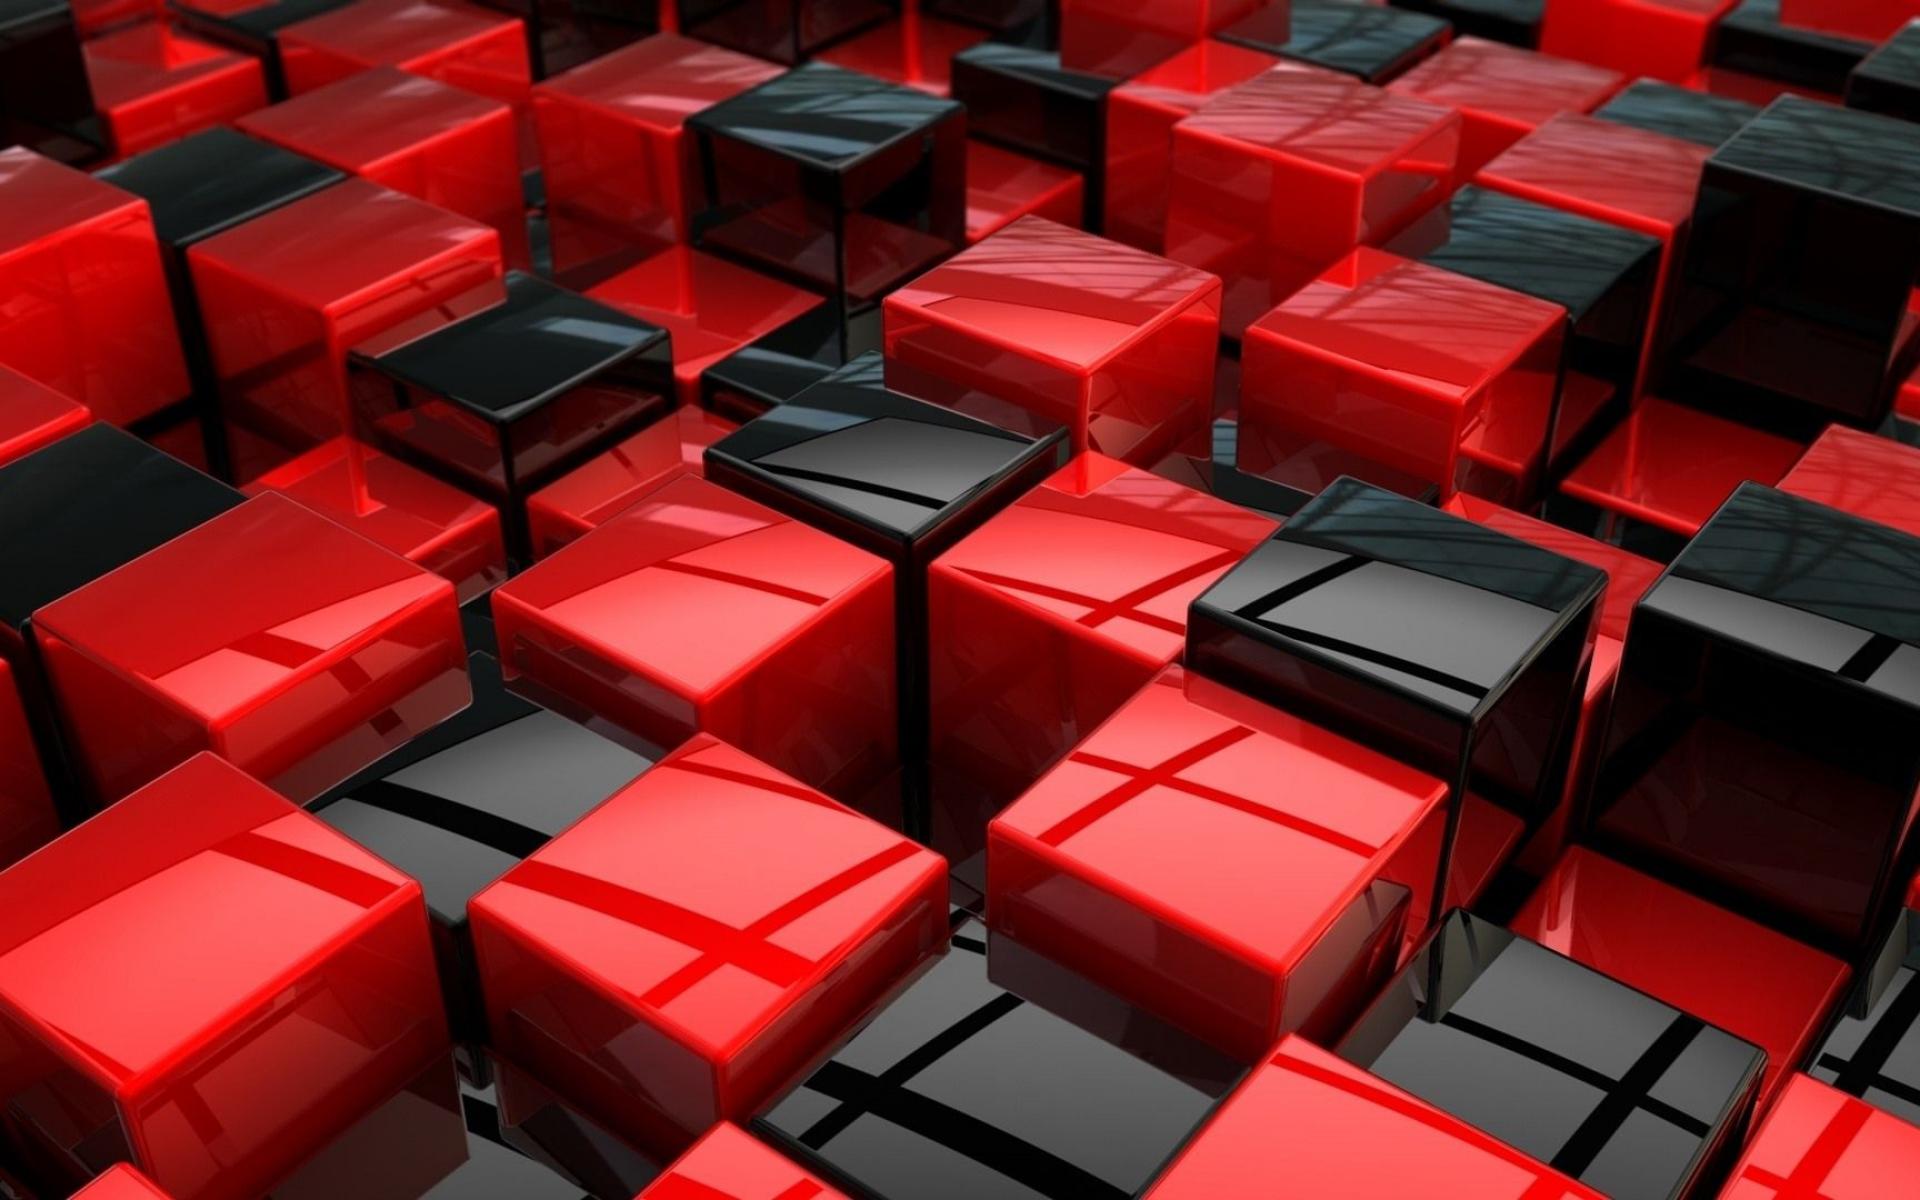 Tải về ngay những hình nền đỏ đen HD miễn phí cực chất lượng để làm nền cho máy tính của bạn. Với sự pha trộn tuyệt vời giữa hai gam màu đỏ và đen, đảm bảo sẽ làm cho màn hình của bạn thêm phần hấp dẫn và đầy ấn tượng.